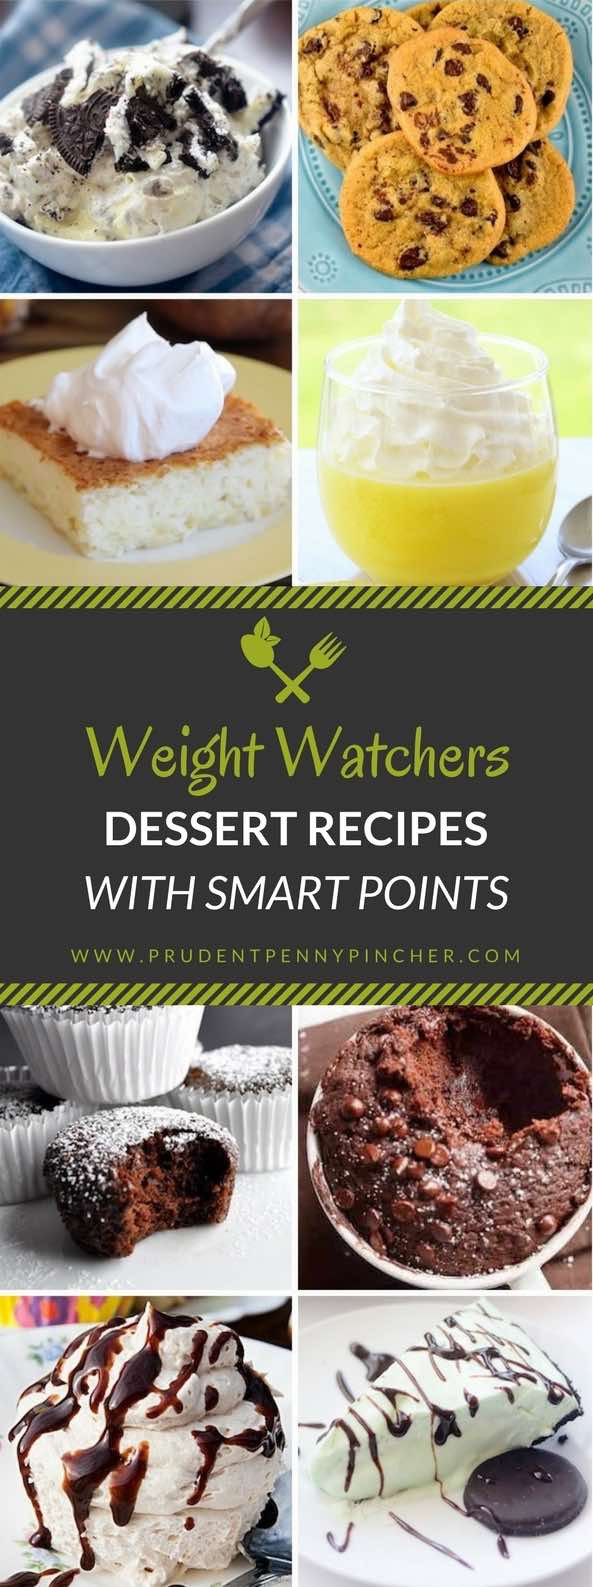 Weight Watchers Desserts Smartpoints
 200 Best Weight Watchers Meals with Smart Points Prudent